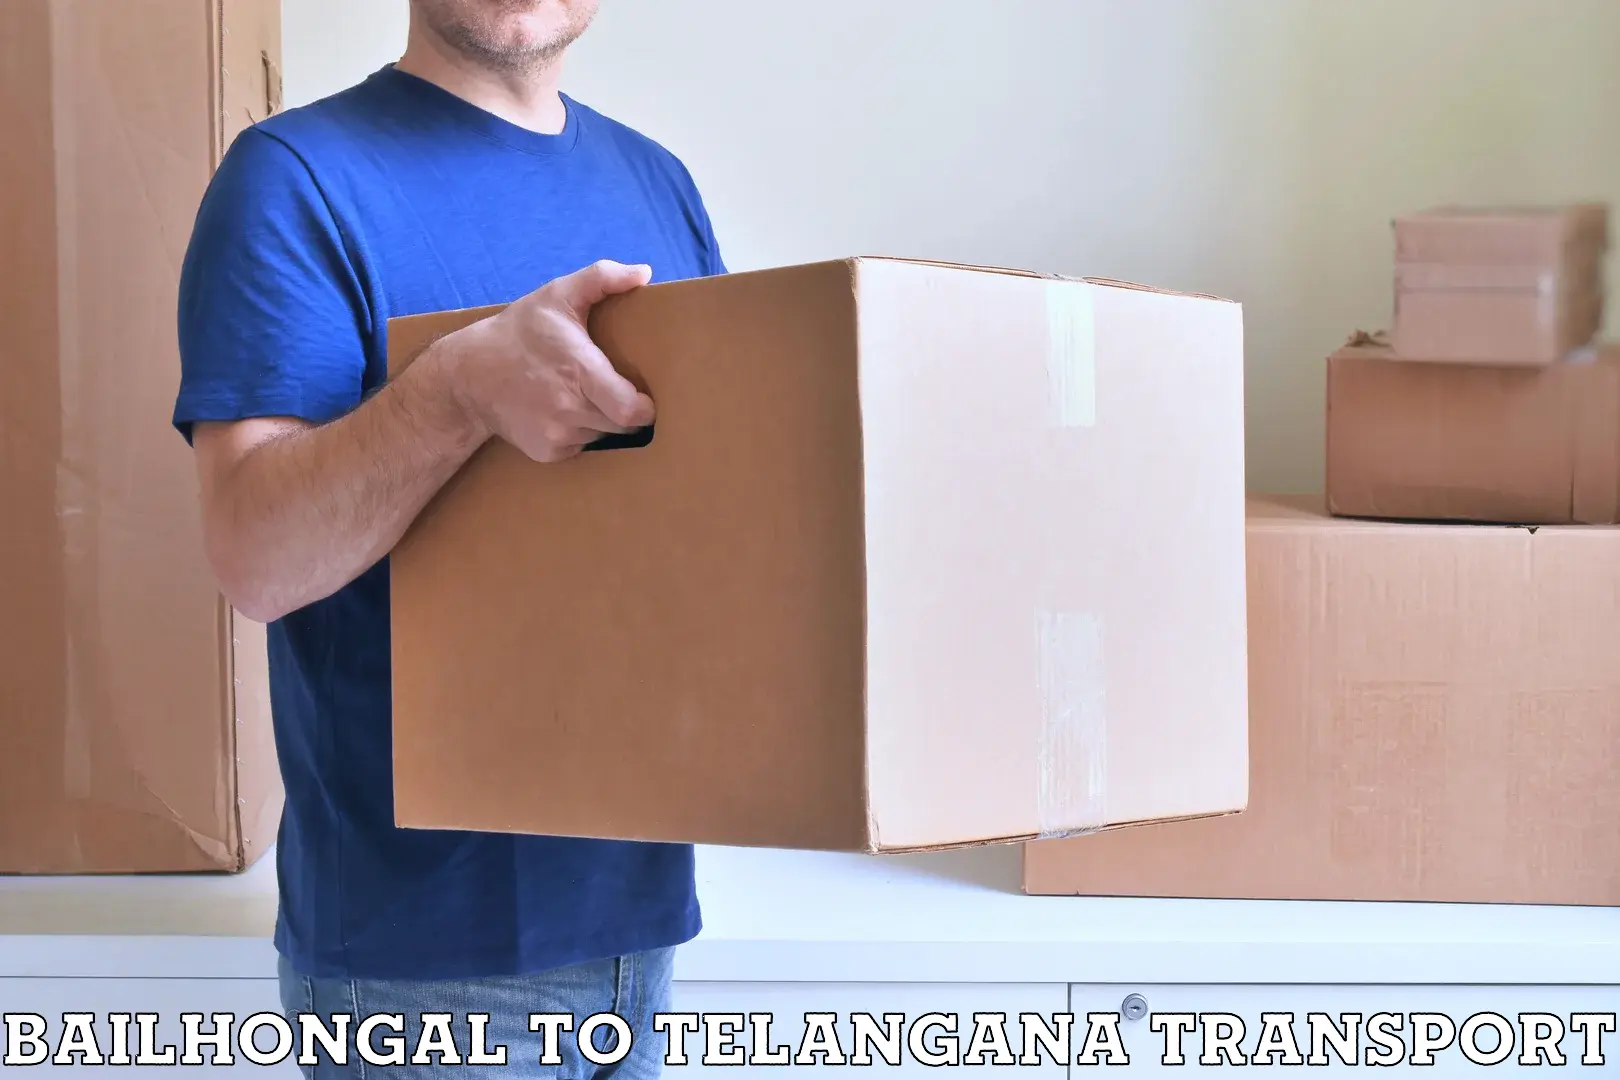 Transport in sharing Bailhongal to Amangal